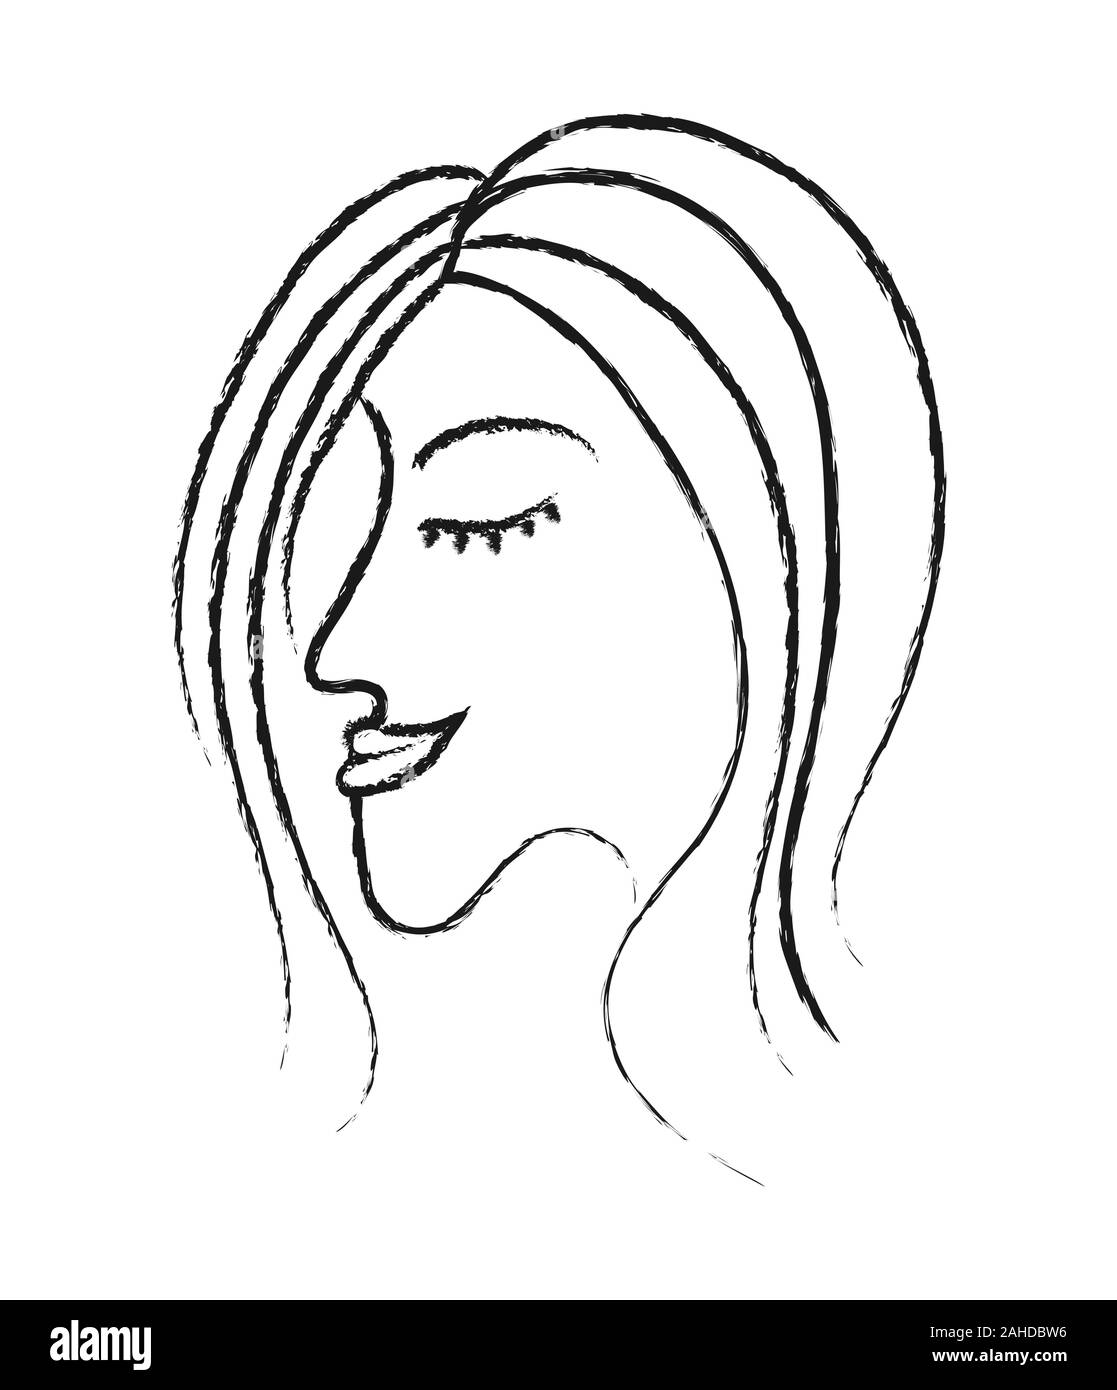 Schöne Profil von das Gesicht einer Frau mit geschlossenen Augen. Der Stil von Doodle. Auf einem weißen Hintergrund. Das Konzept der Feminismus oder Tag der Frauen. Bla Stock Vektor